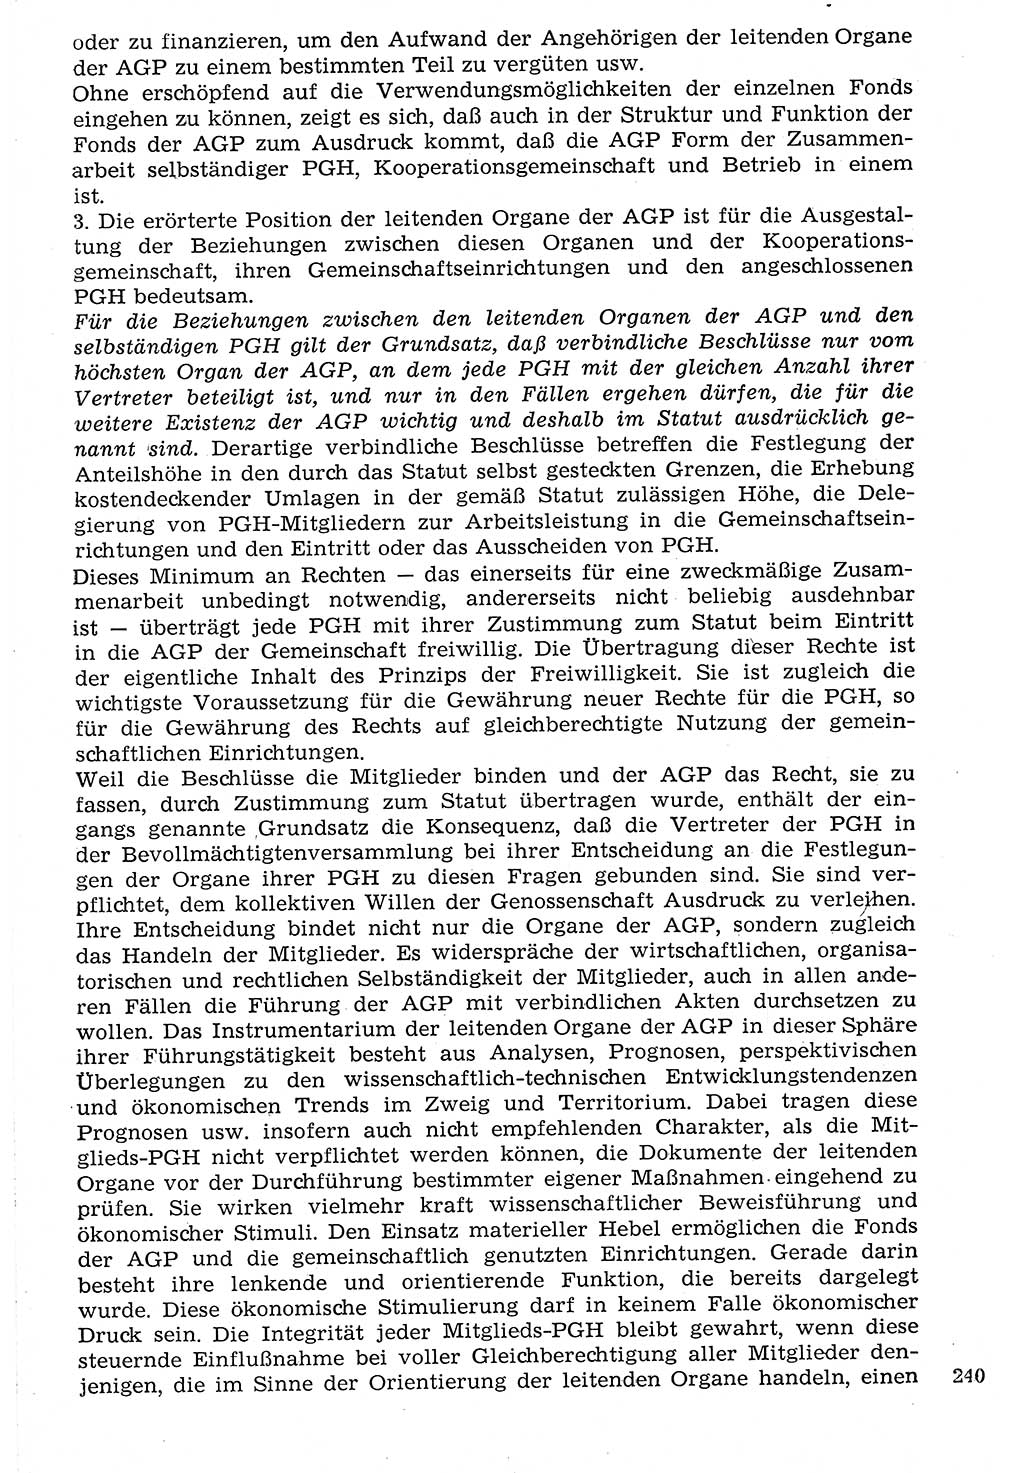 Staat und Recht (StuR), 17. Jahrgang [Deutsche Demokratische Republik (DDR)] 1968, Seite 240 (StuR DDR 1968, S. 240)